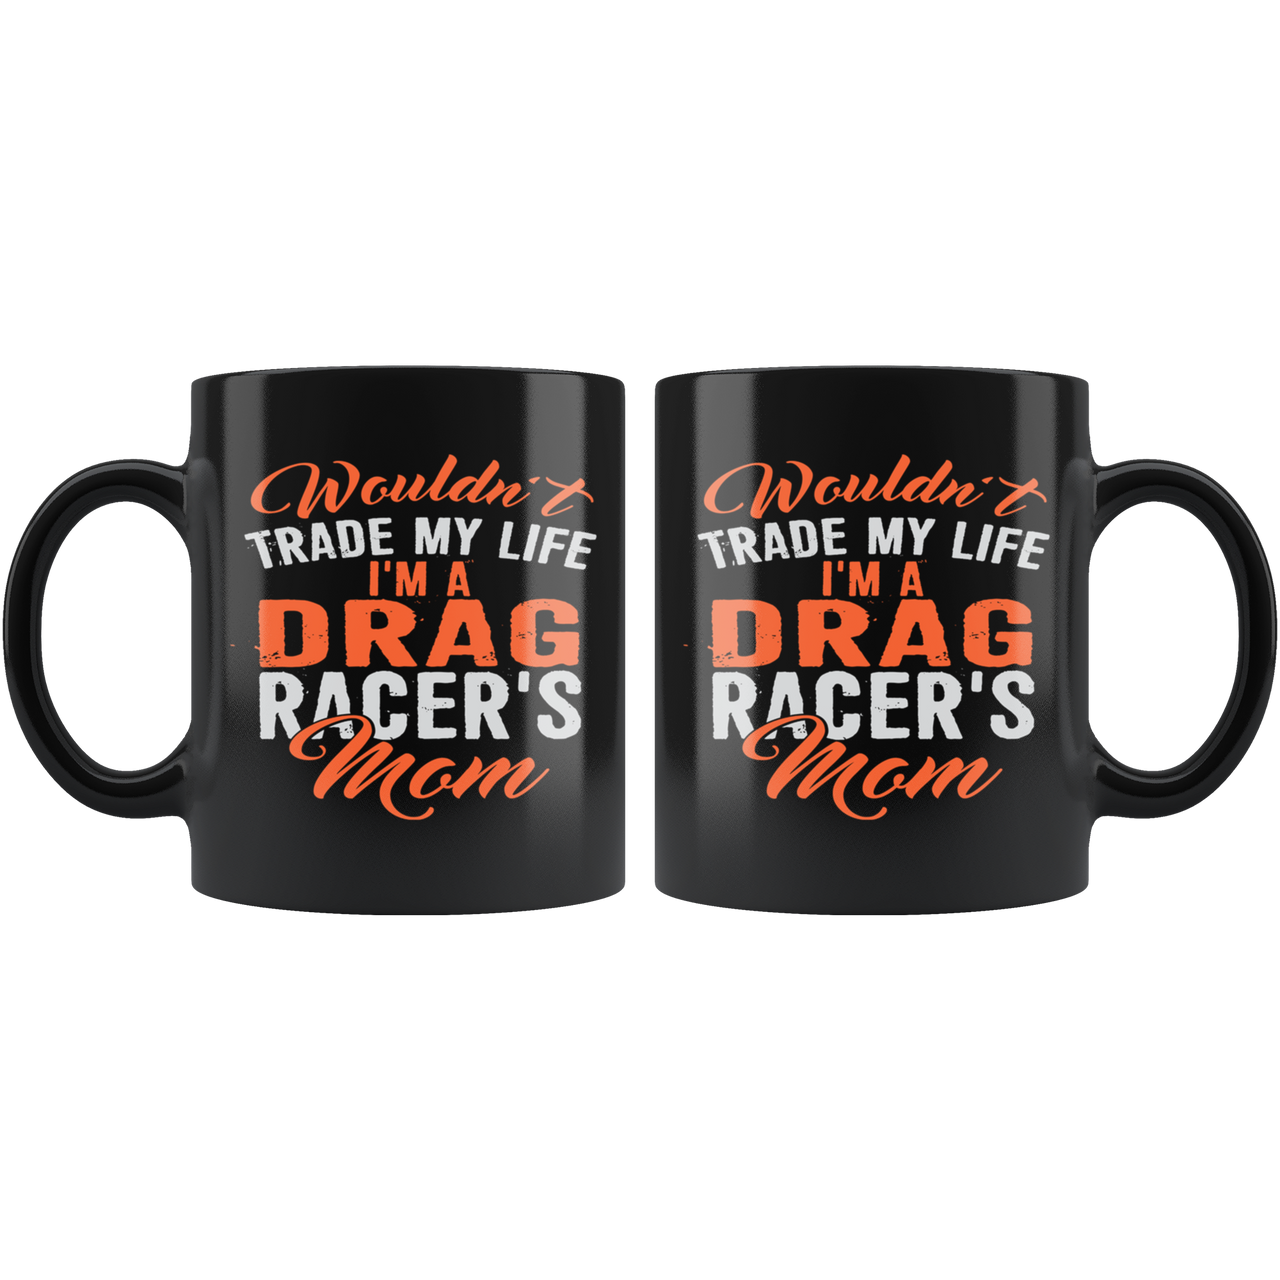 Wouldn't Trade My Life I'm A Drag Racer's Mom Mug!